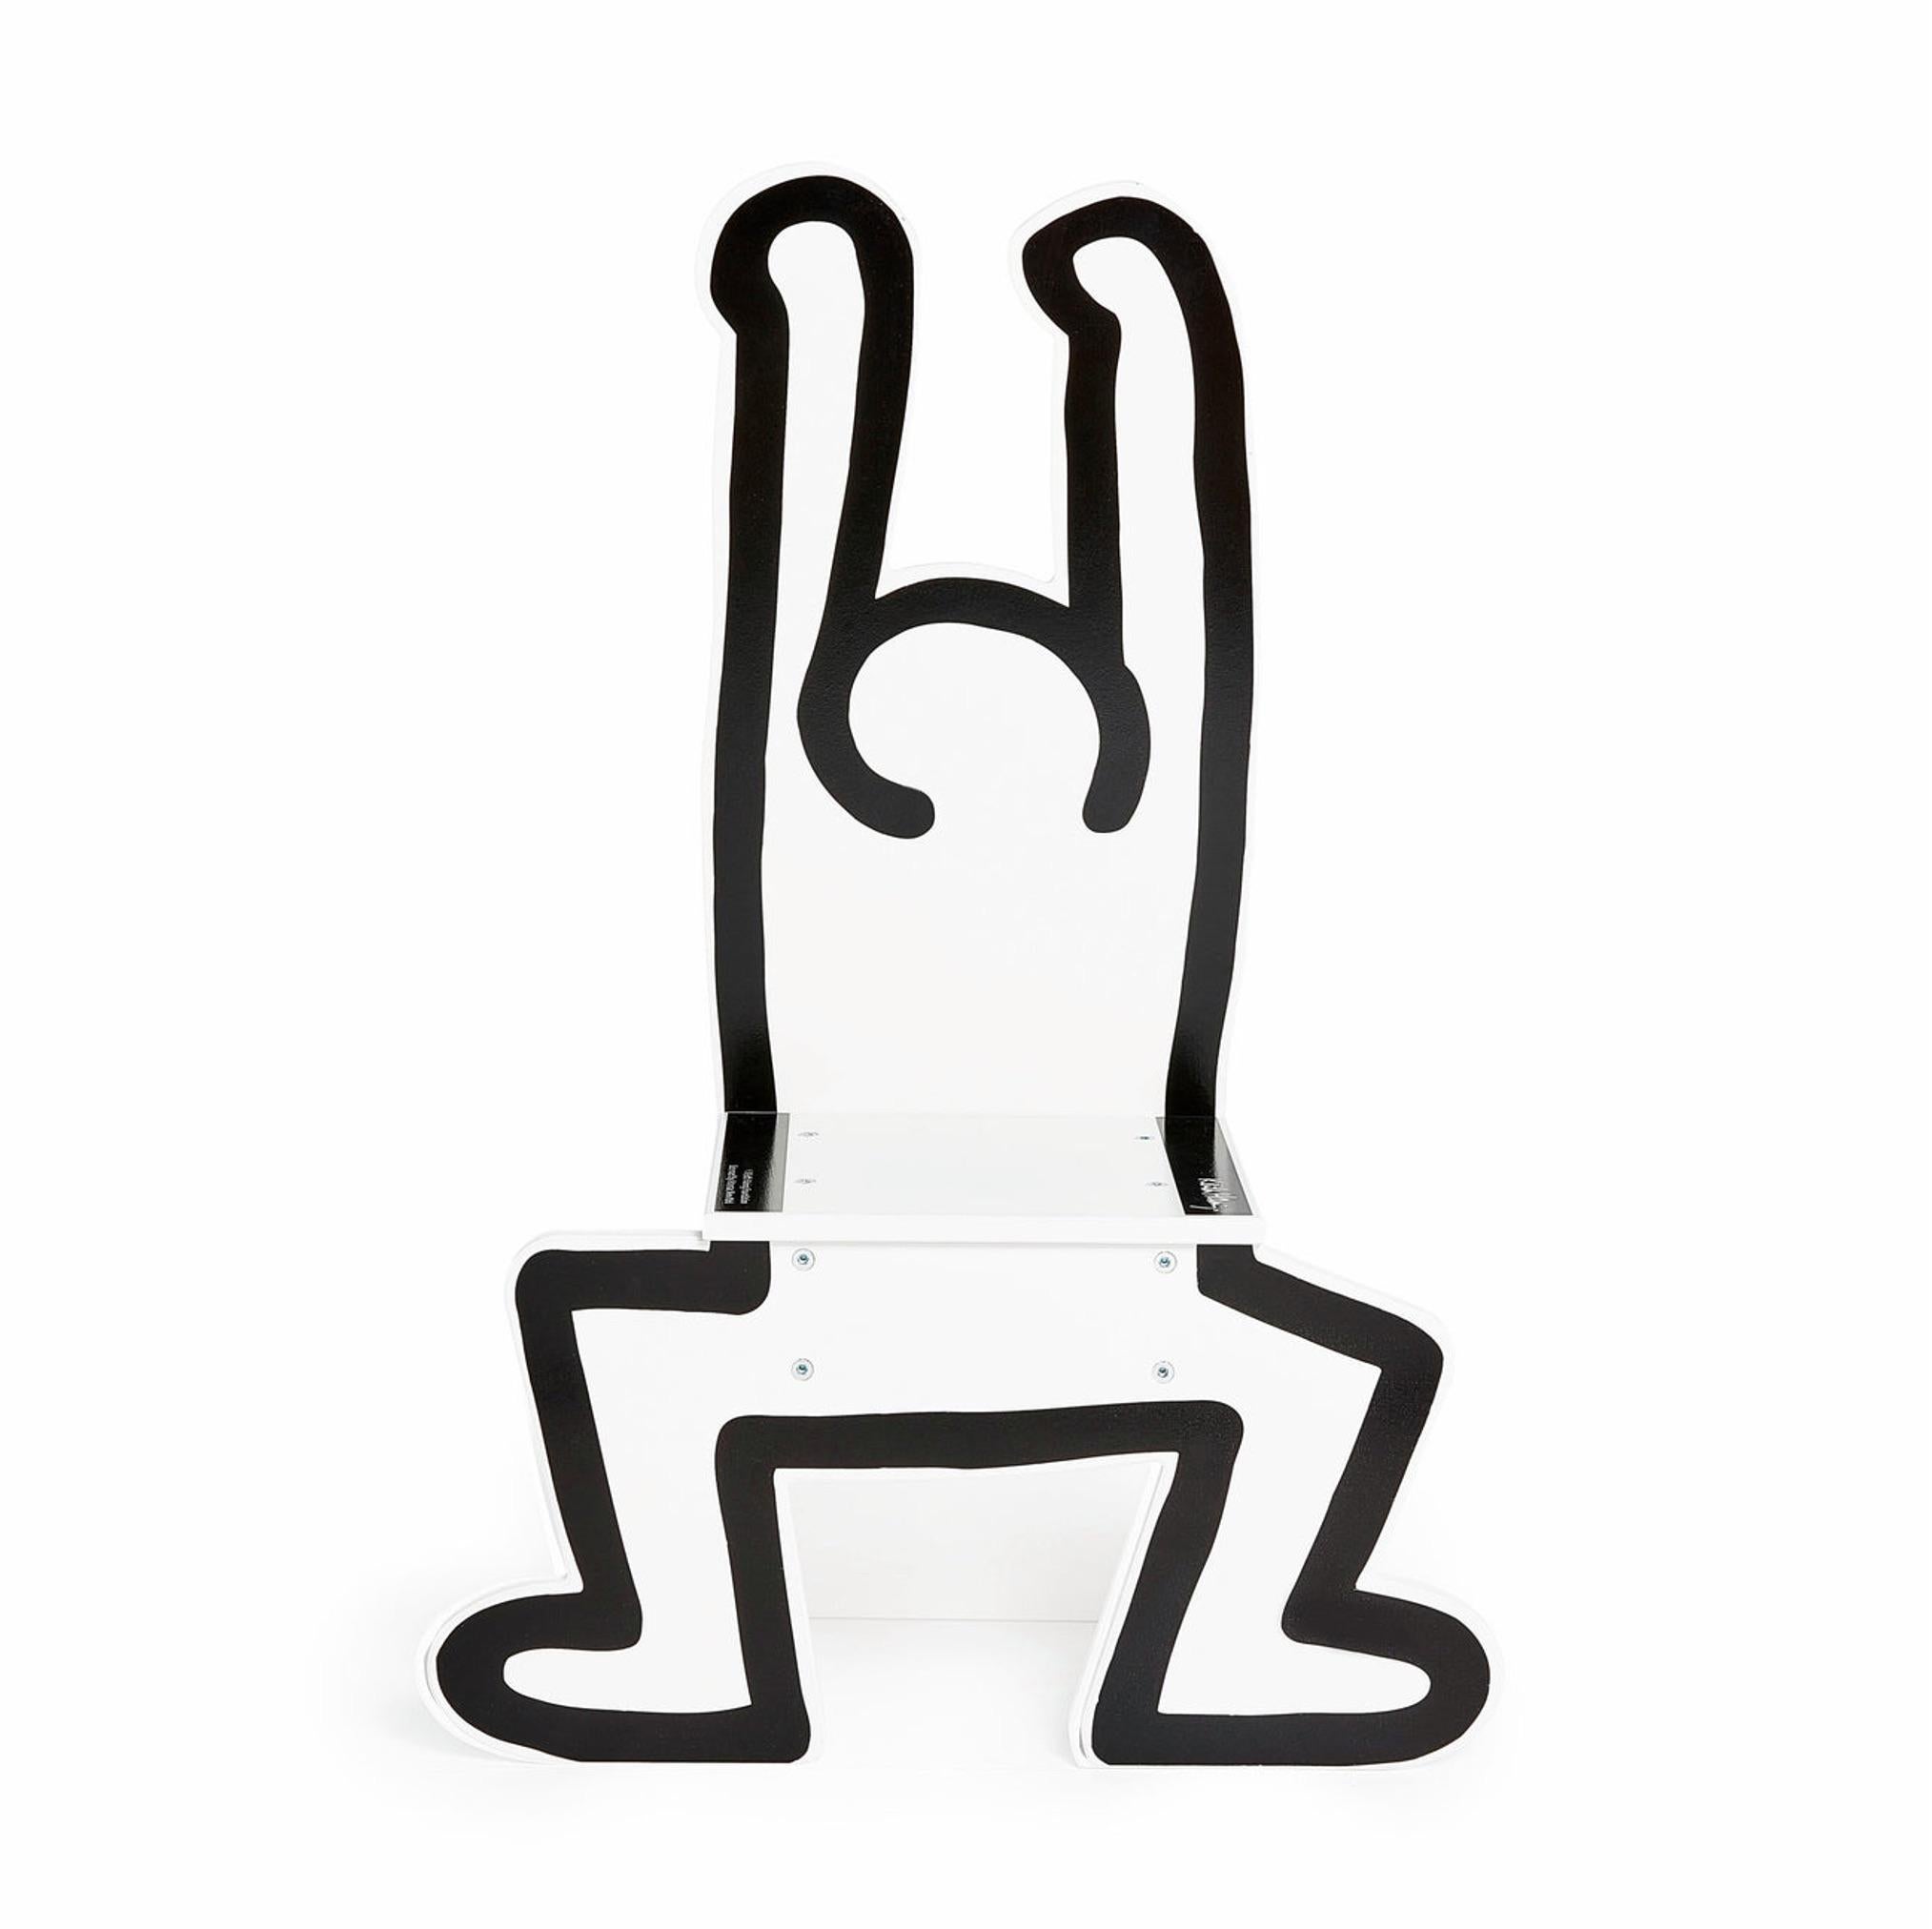 L'une des figures emblématiques et énergiques de Keith Haring, apparue dans nombre de ses peintures et sculptures au cours des années 1980, est interprétée par la marque française Vilac pour cette chaise pour enfants. La chaise Keith Haring pour